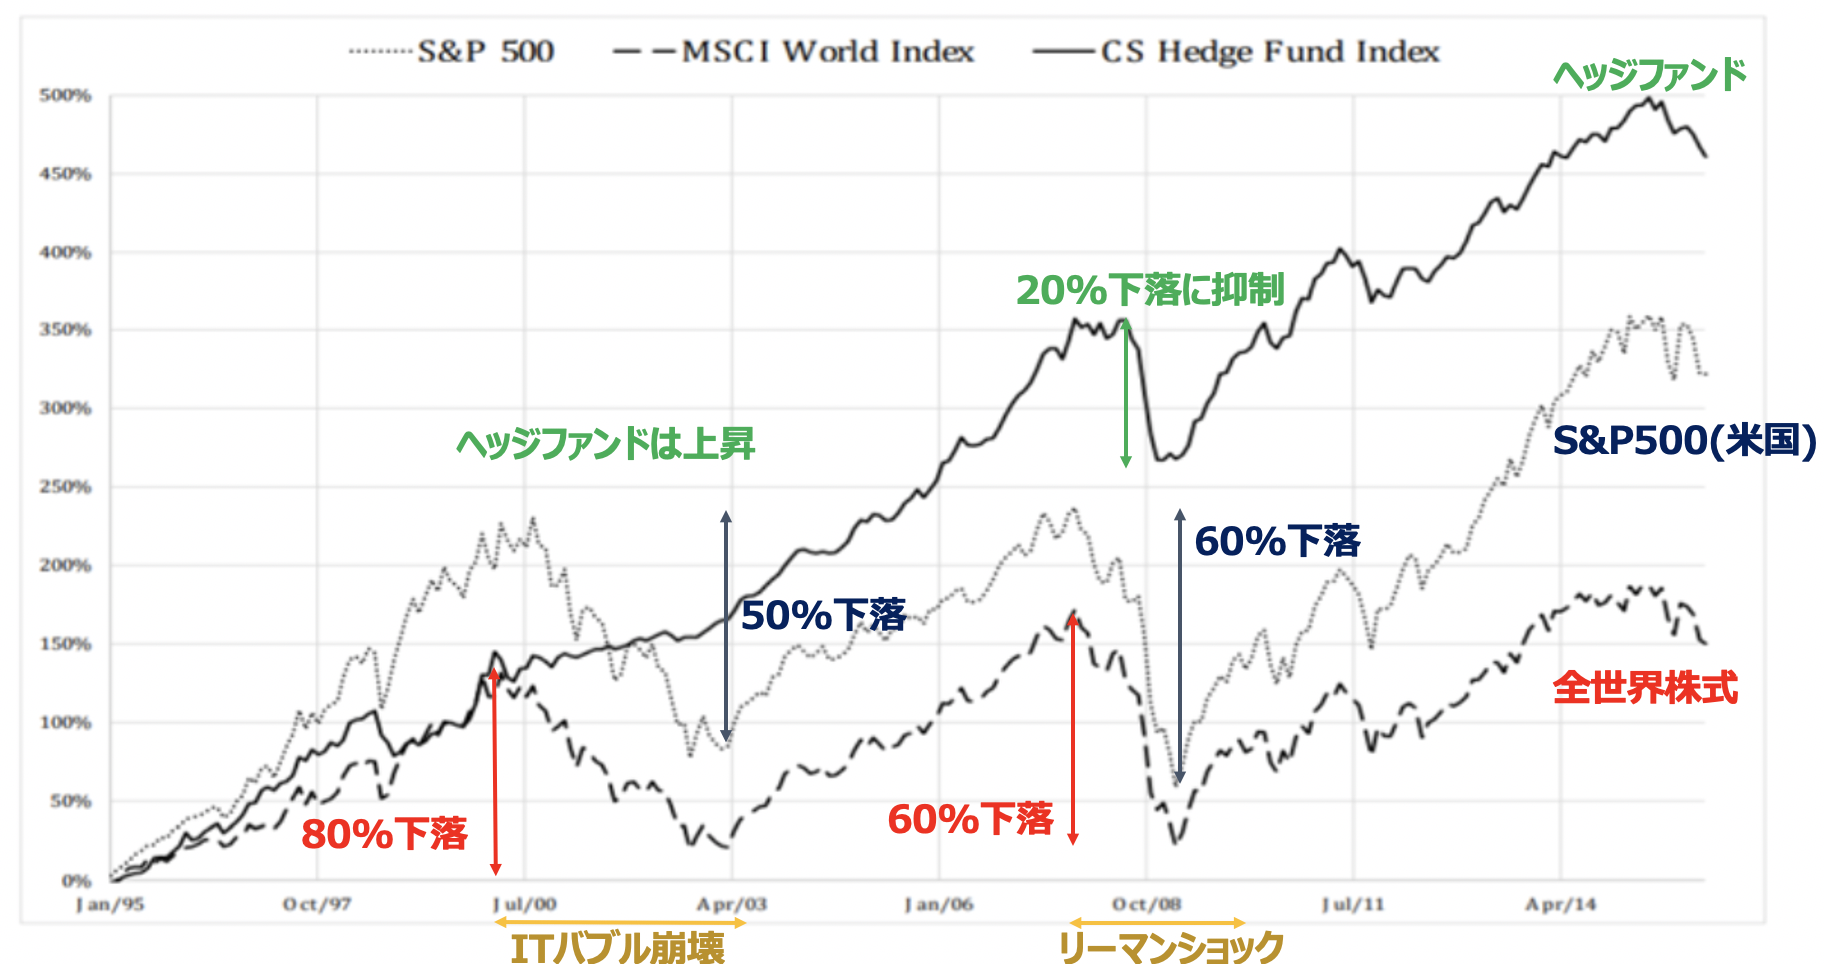 ヘッジファンドは株式市場の暴落を免れながら安定したリターンを積み上げている